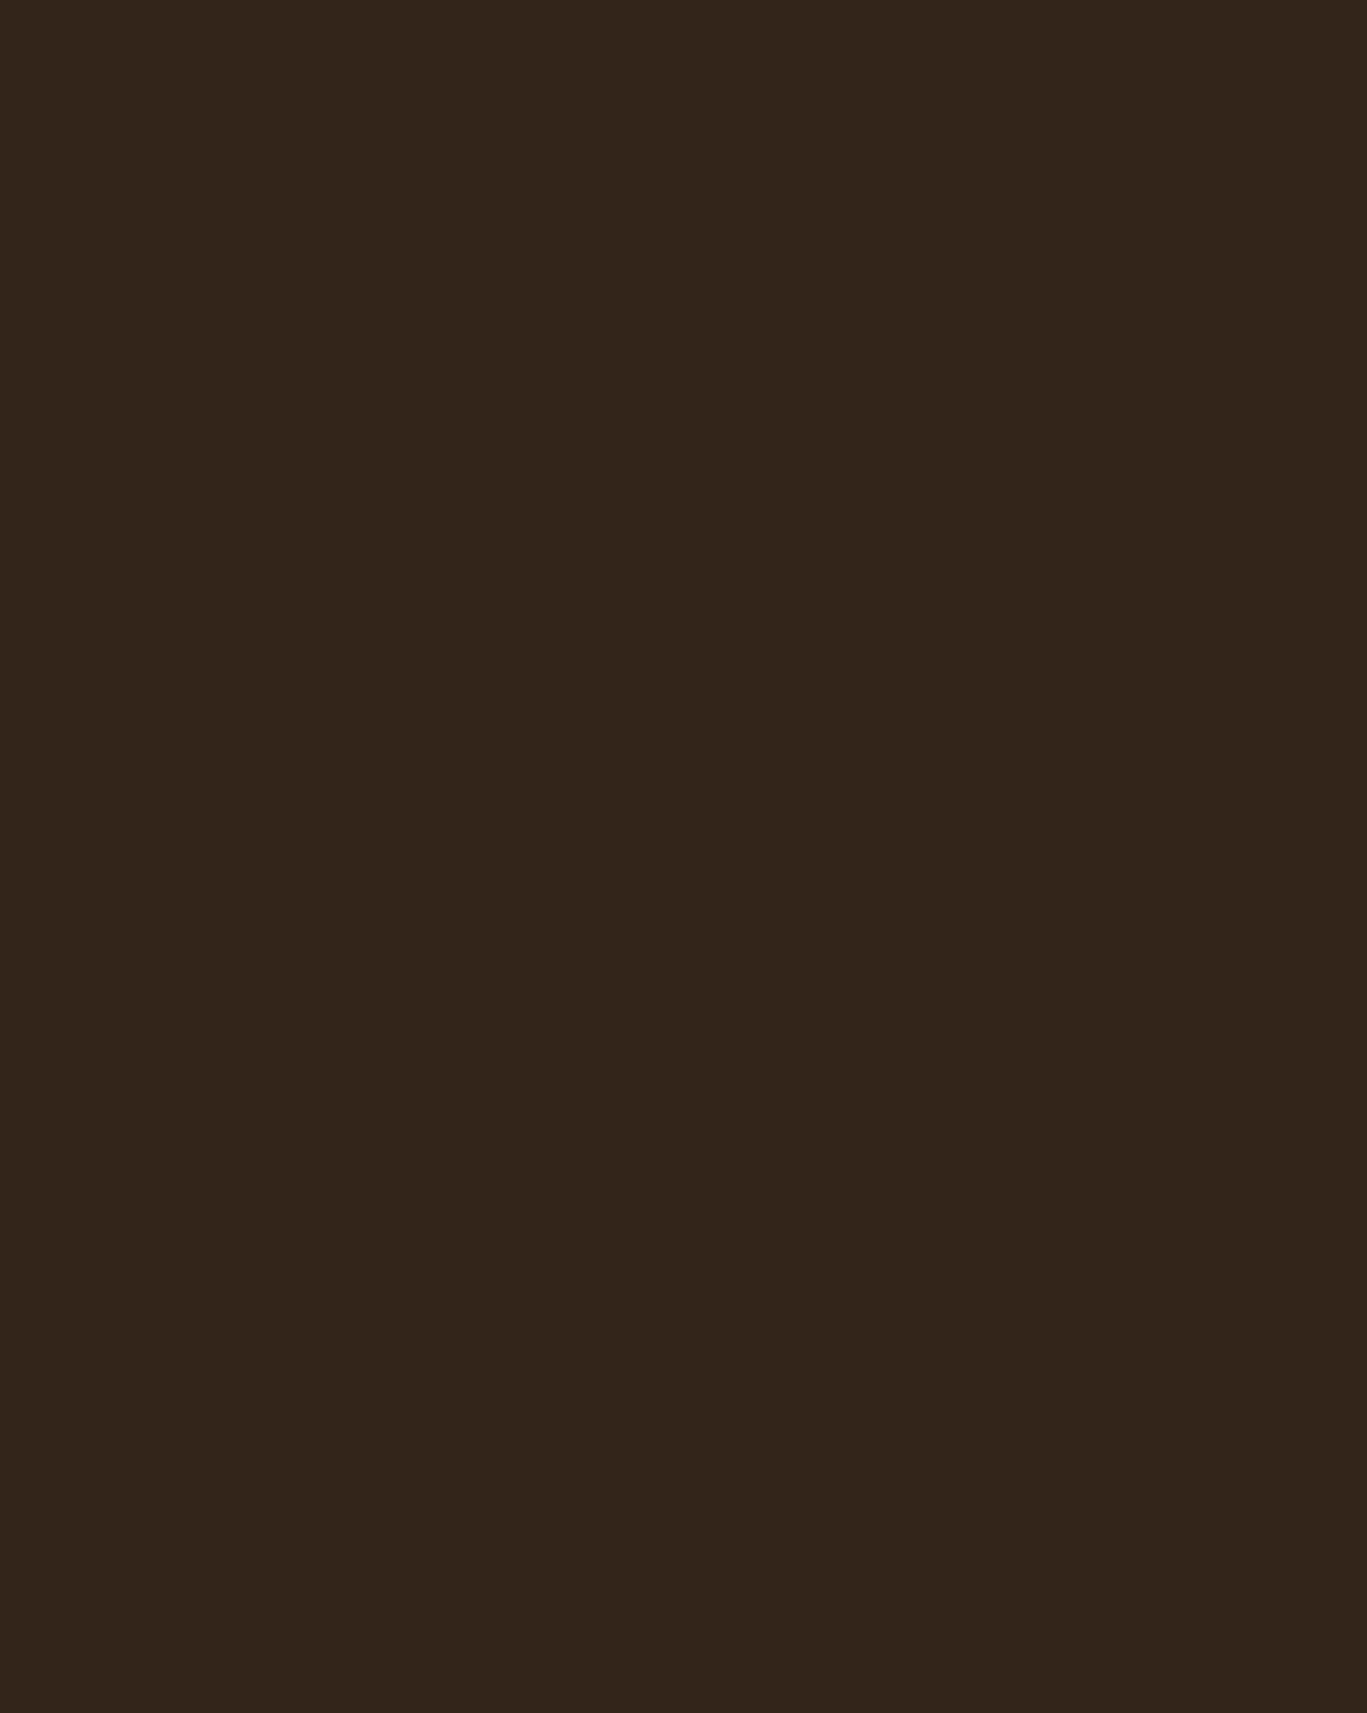 Иван Крамской. Портрет художника Ильи Репина (фрагмент). 1876. Государственная Третьяковская галерея, Москва